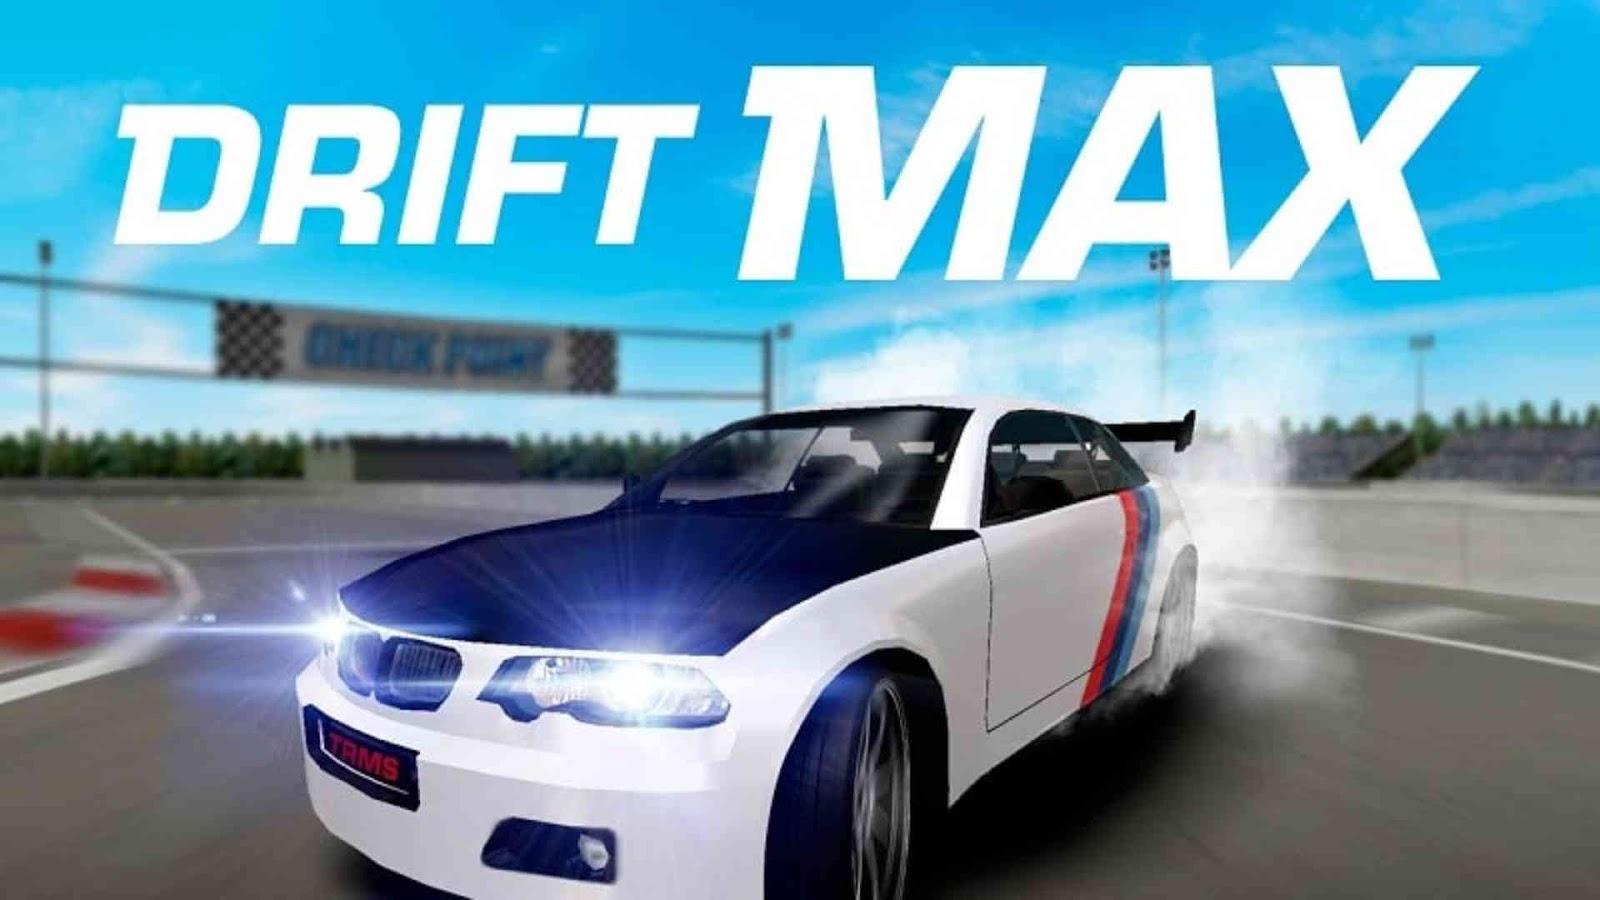 Drift Max – Car Racing